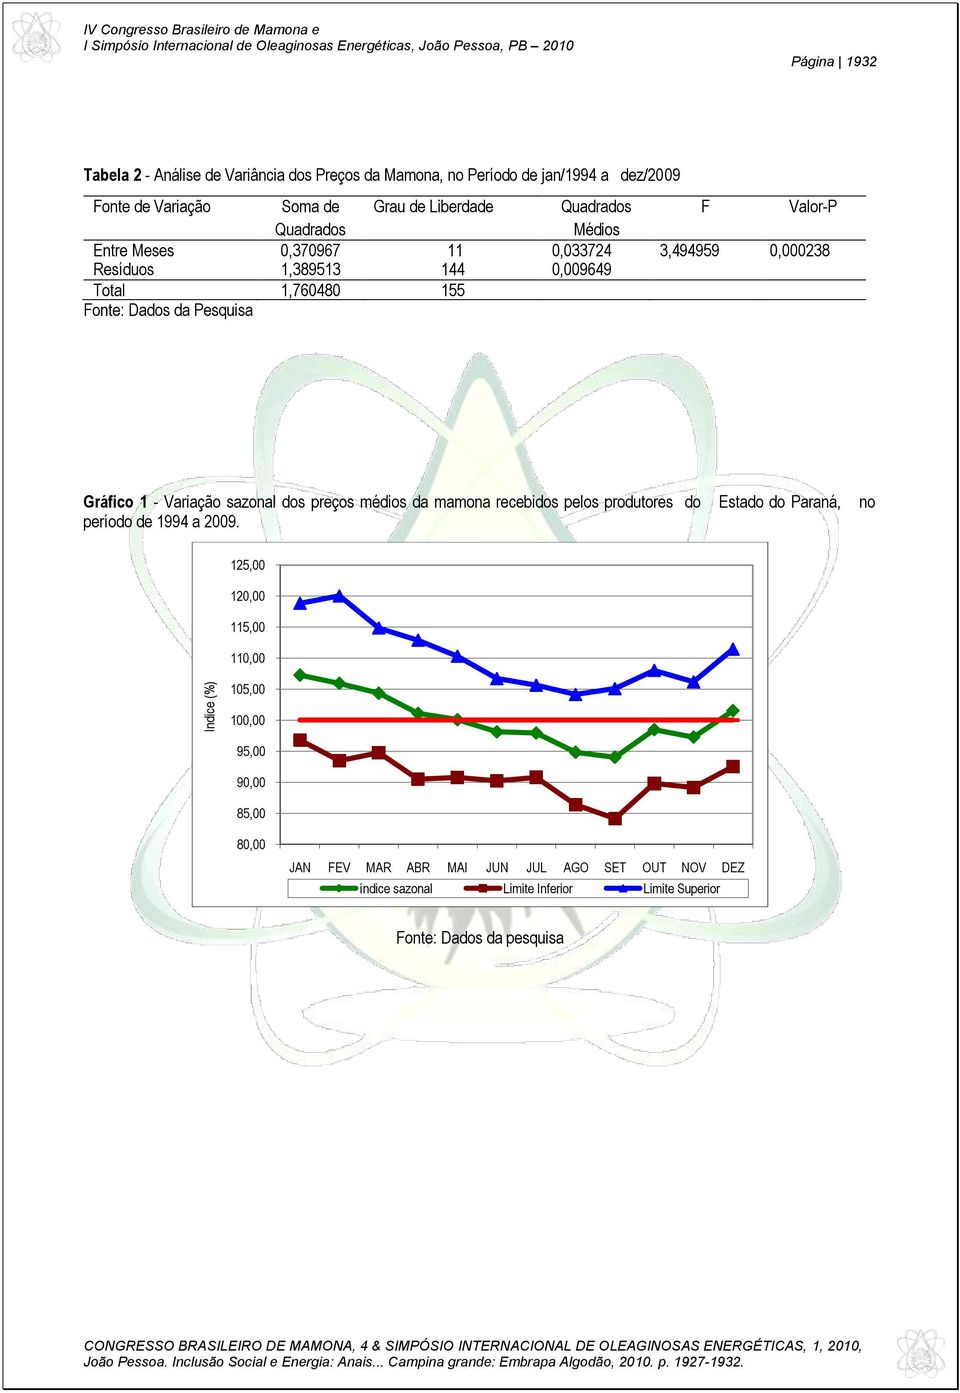 Fonte: Dados da Pesquisa Gráfico 1 - Variação sazonal dos preços médios da mamona recebidos pelos produtores do Estado do Paraná, no período de 1994 a 2009.